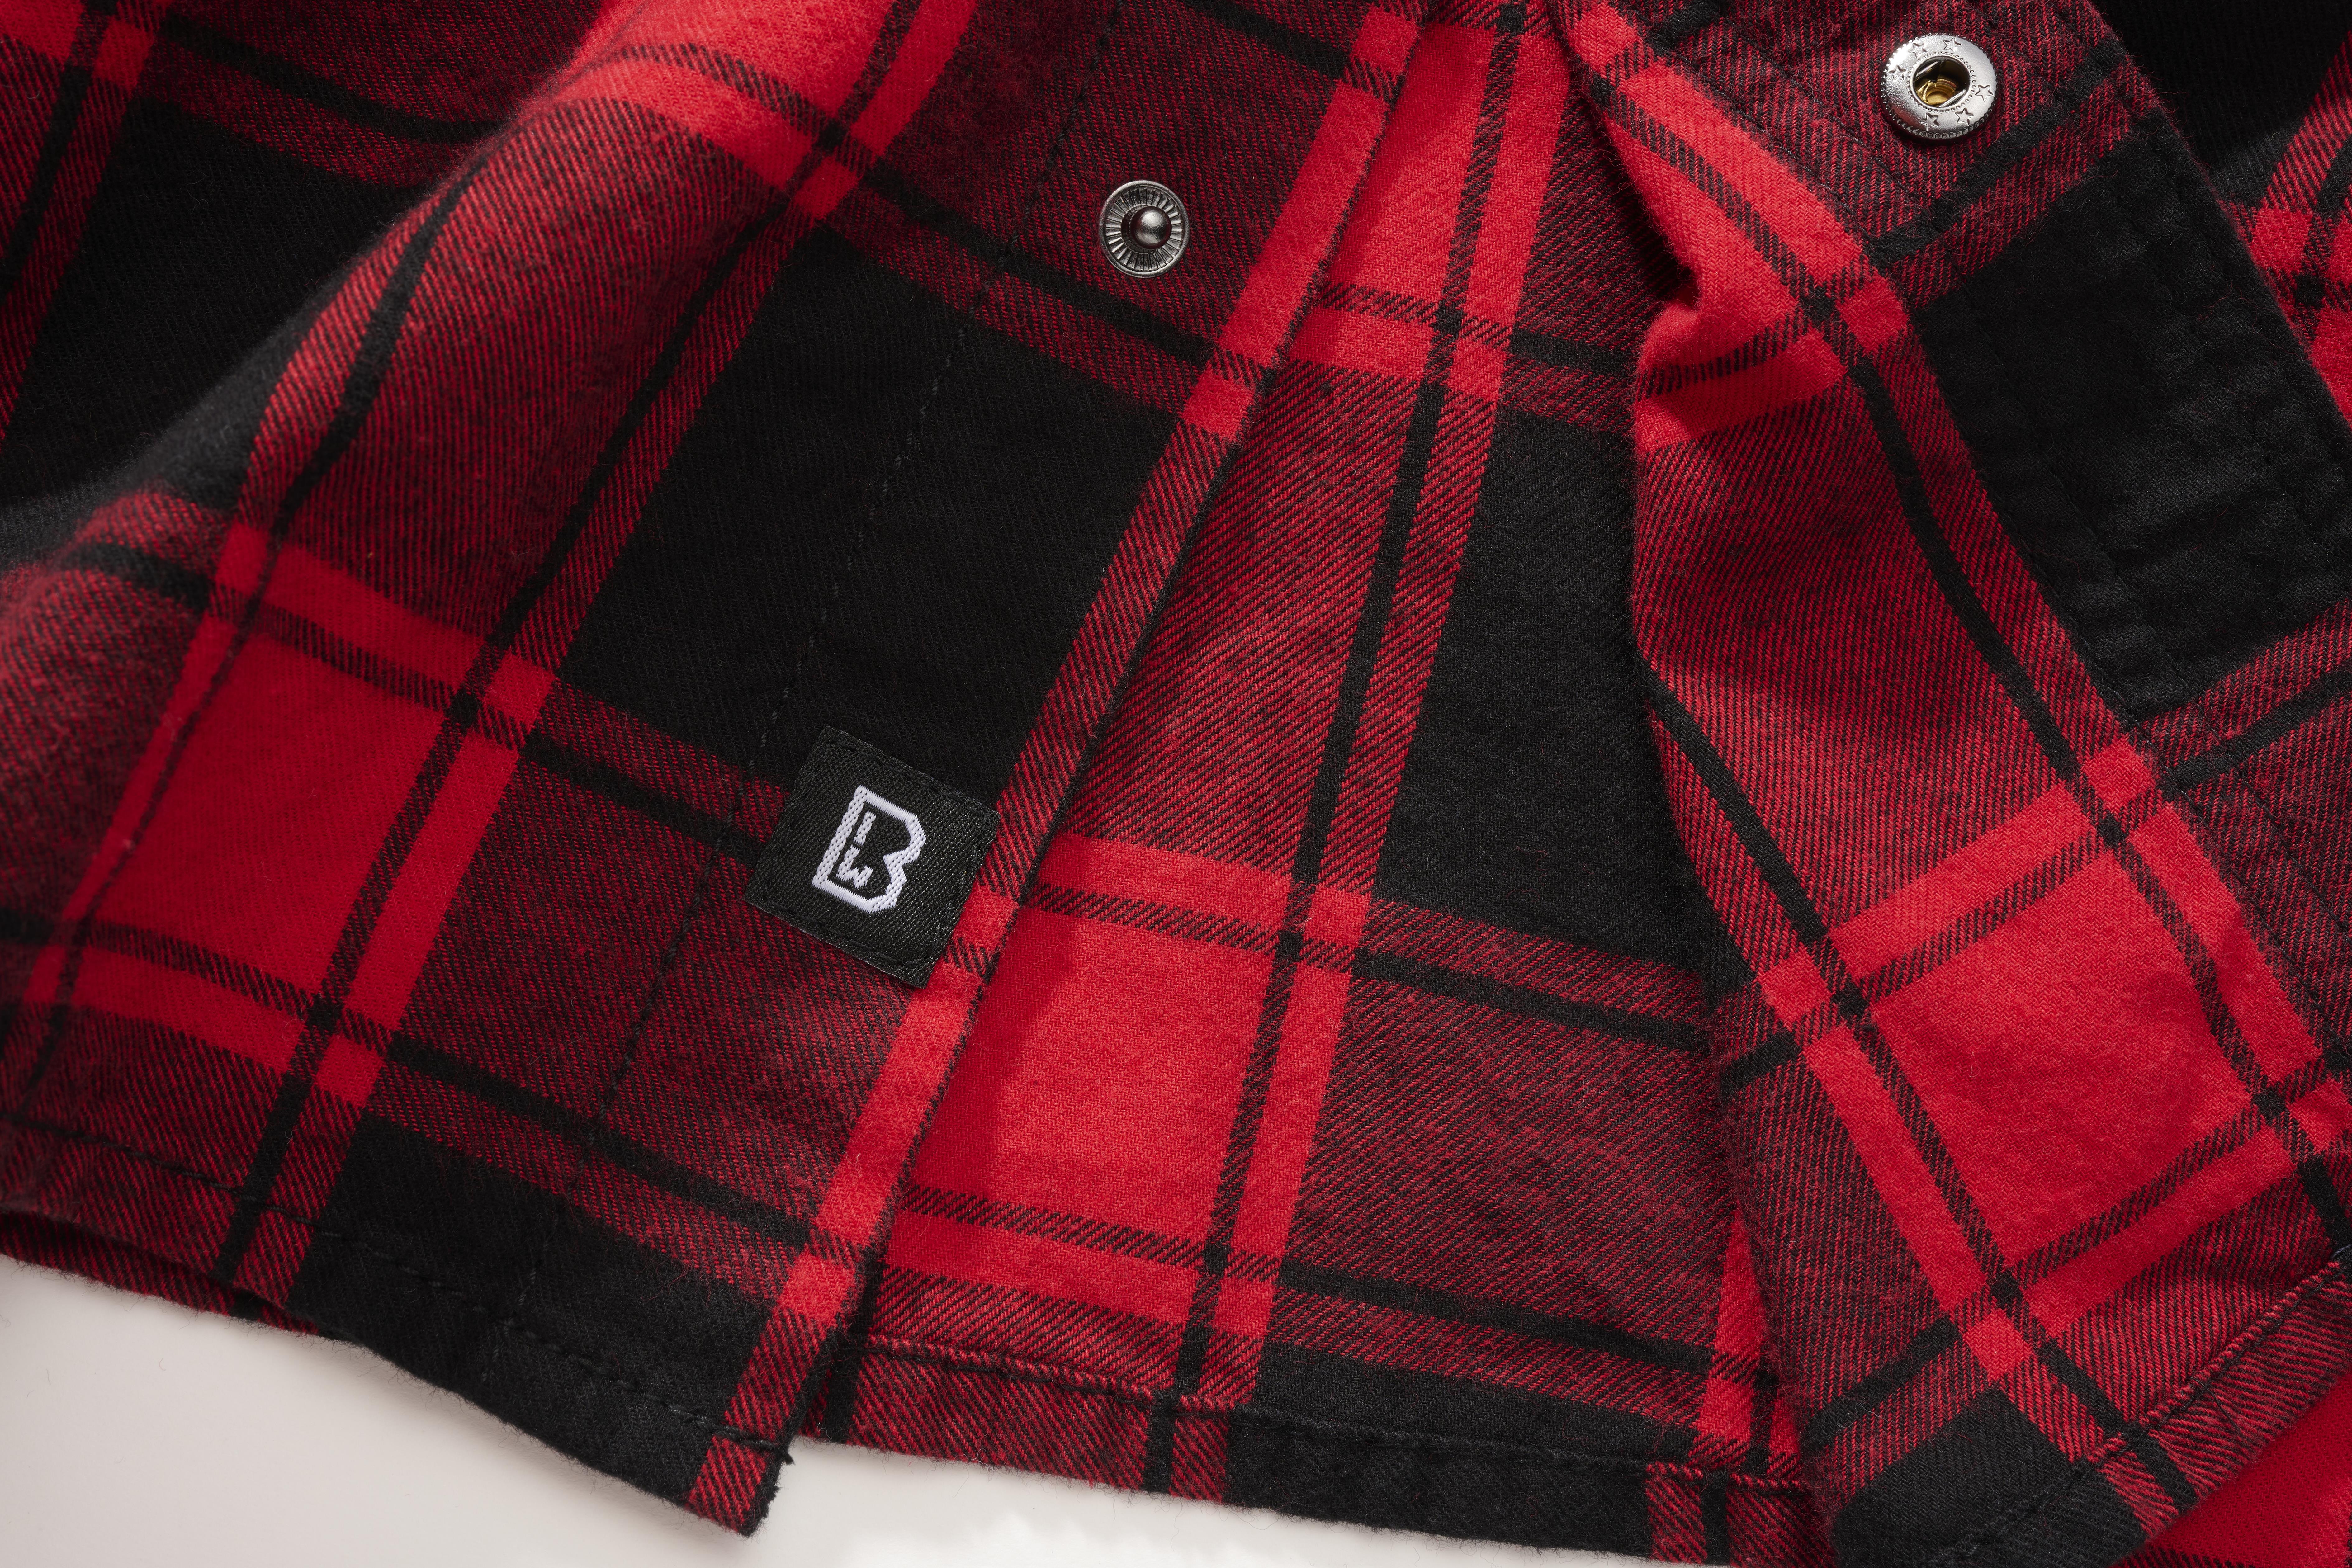 Brandit Checkshirt, Farbe rot/schwarz, Größe XL